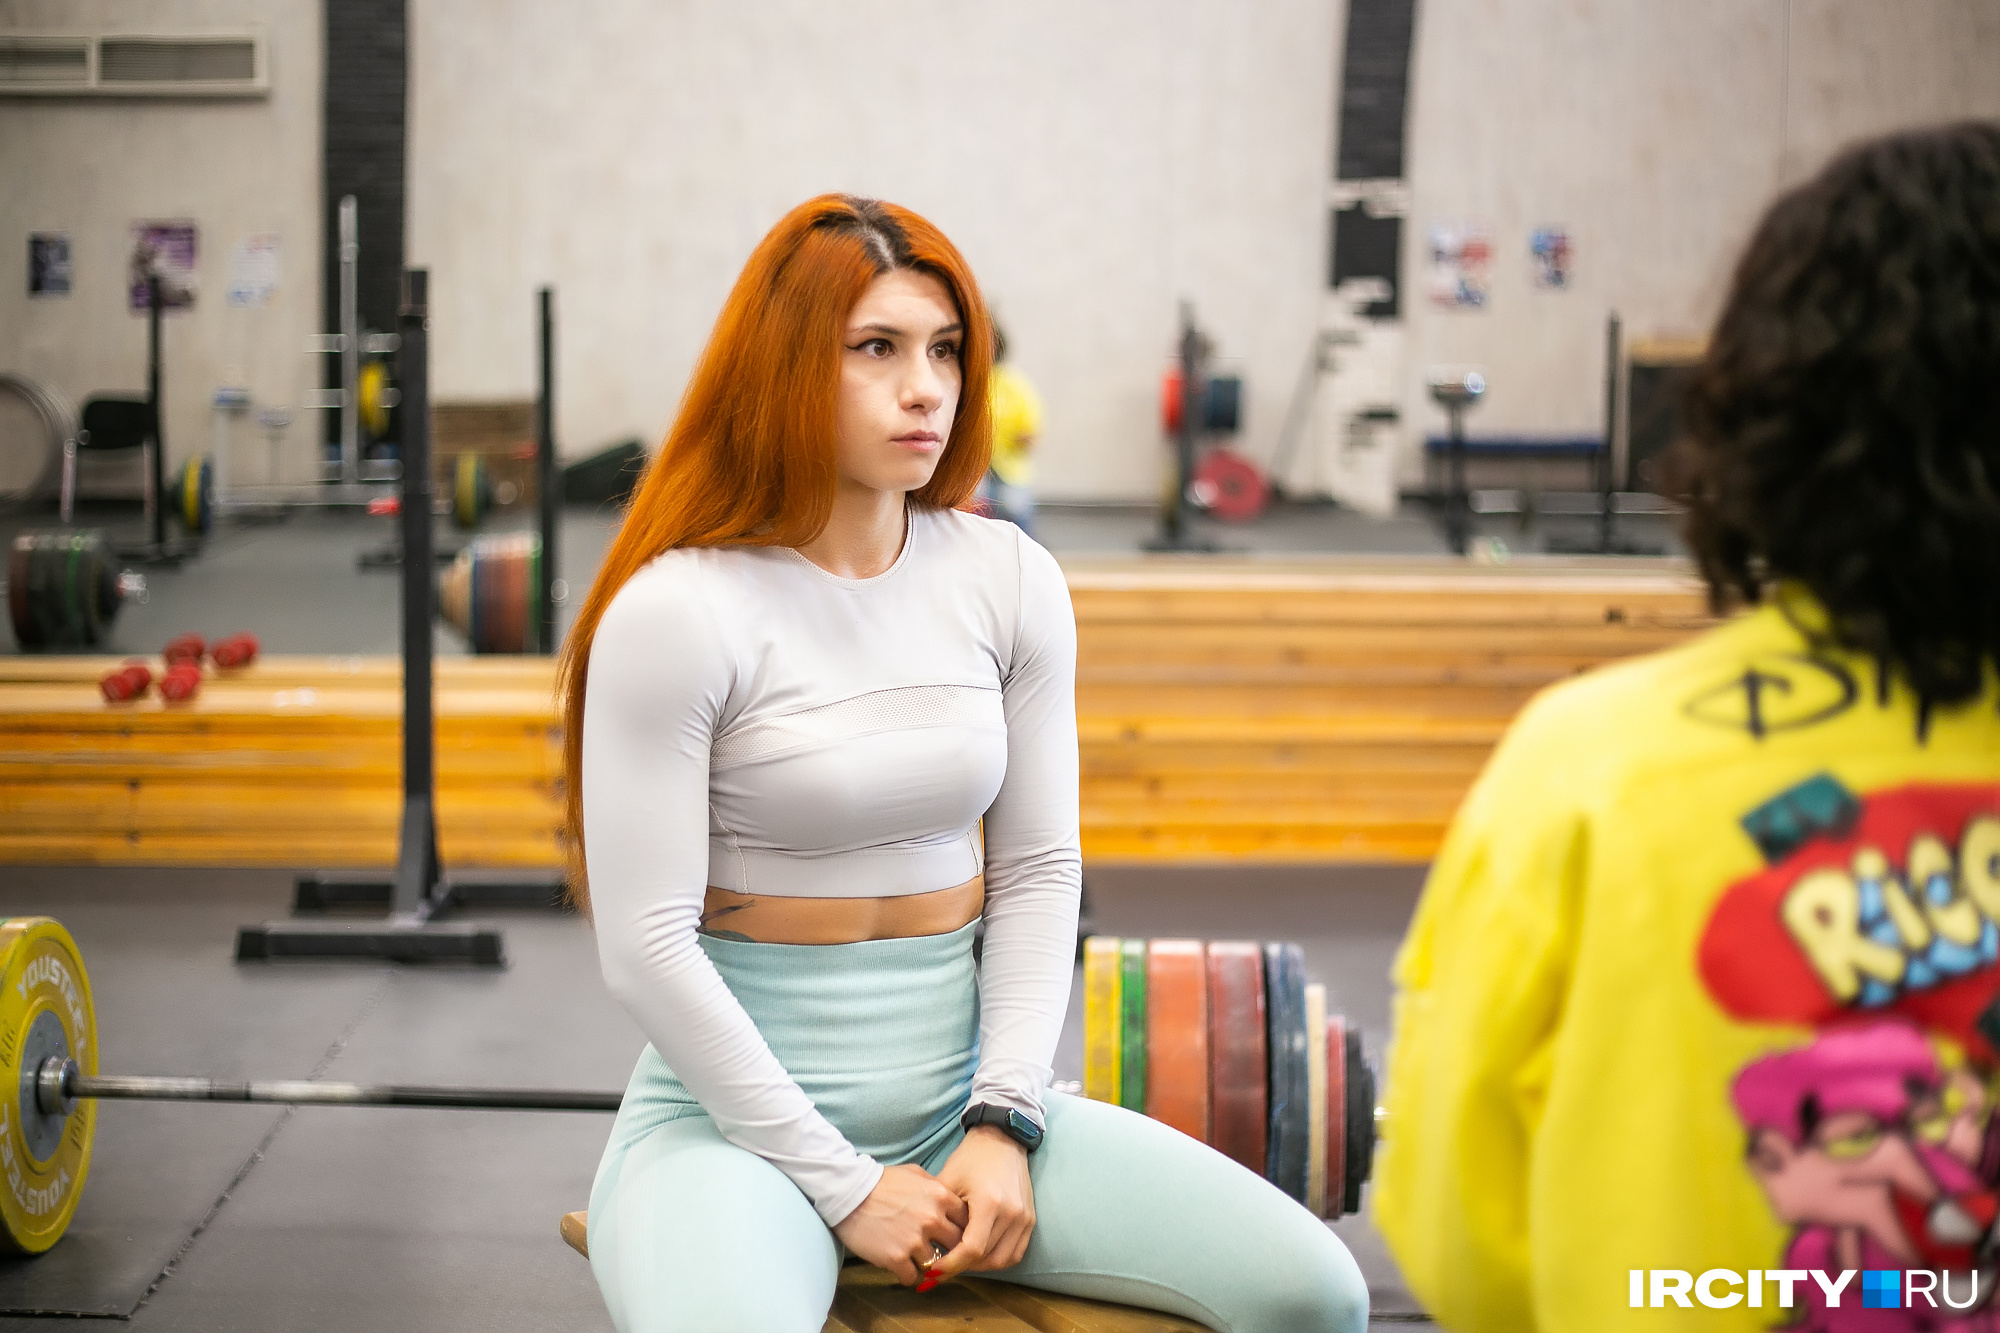 Тренировки дома для девушек: 100 упражнений для всего тела + 4 готовых плана